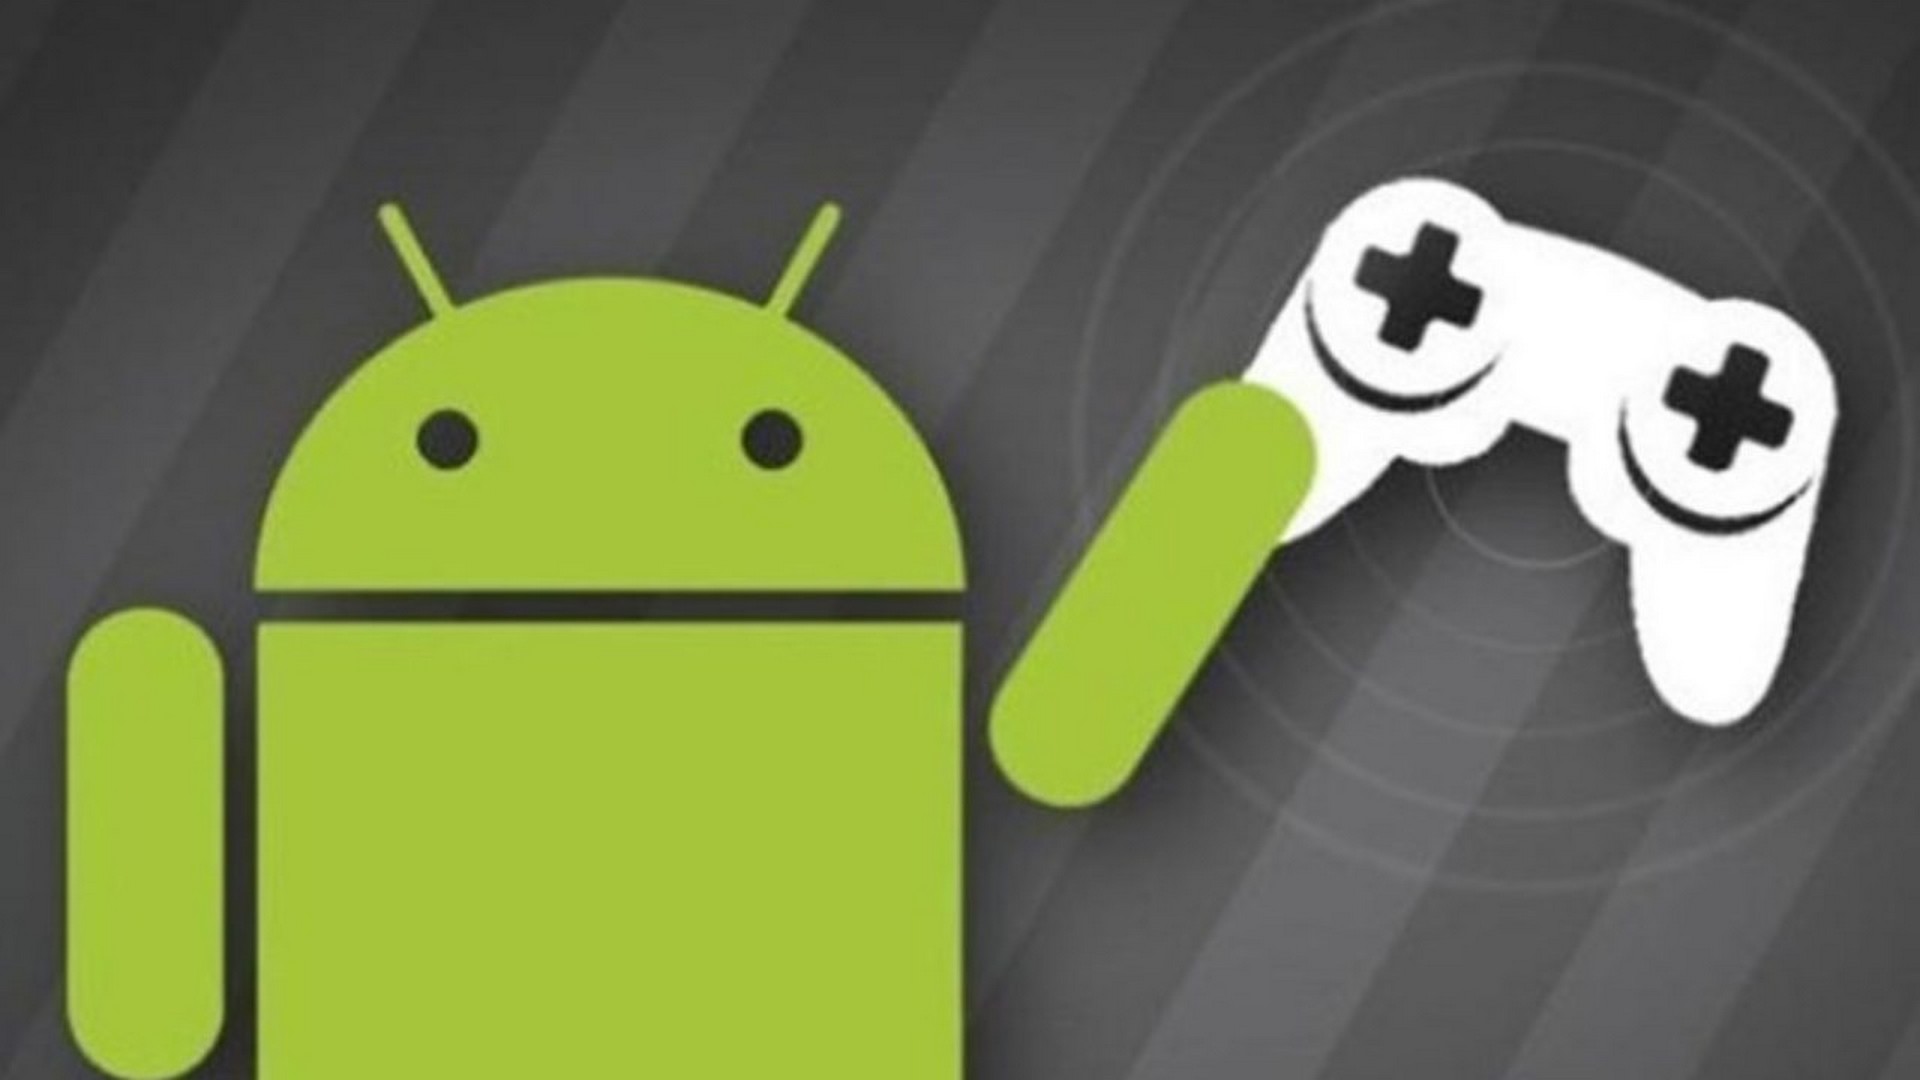 Apk game file. Андроид. Android игры. Игровые Android-приложения. Игры на андроид фото.